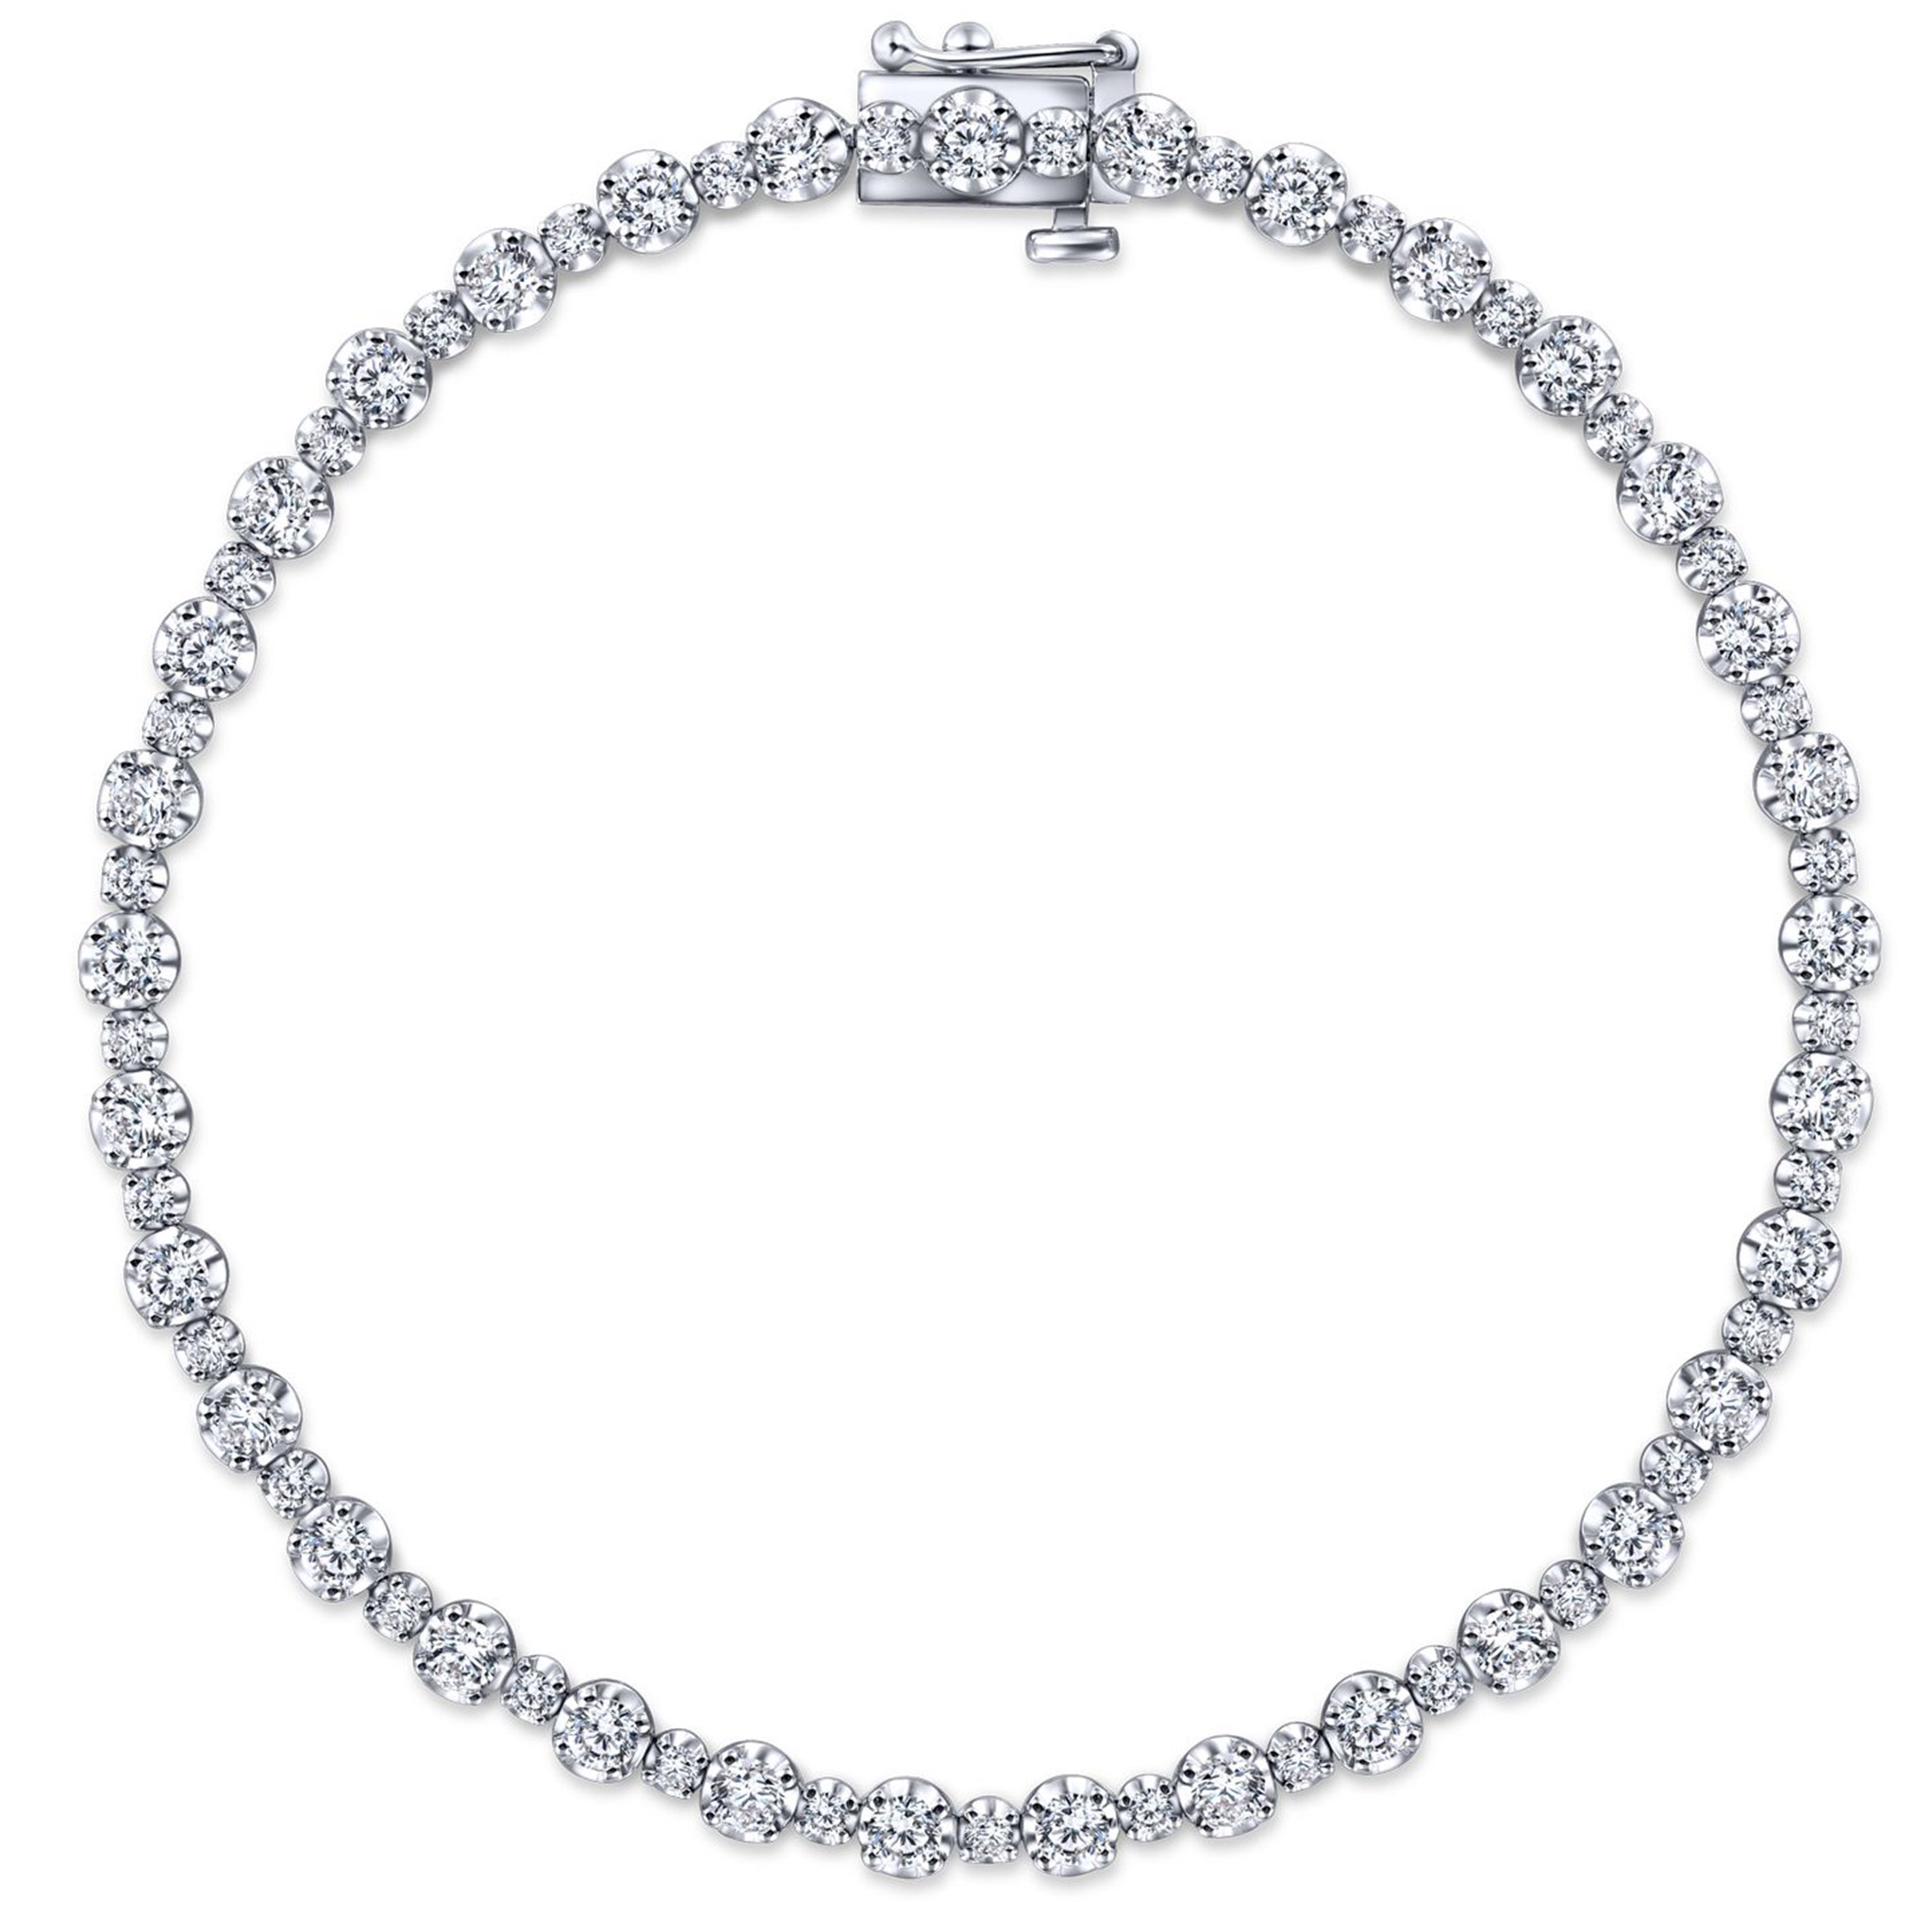 Lusso-Alternating-Diamond-Tennis-Bracelet-in-14k-White-Gold